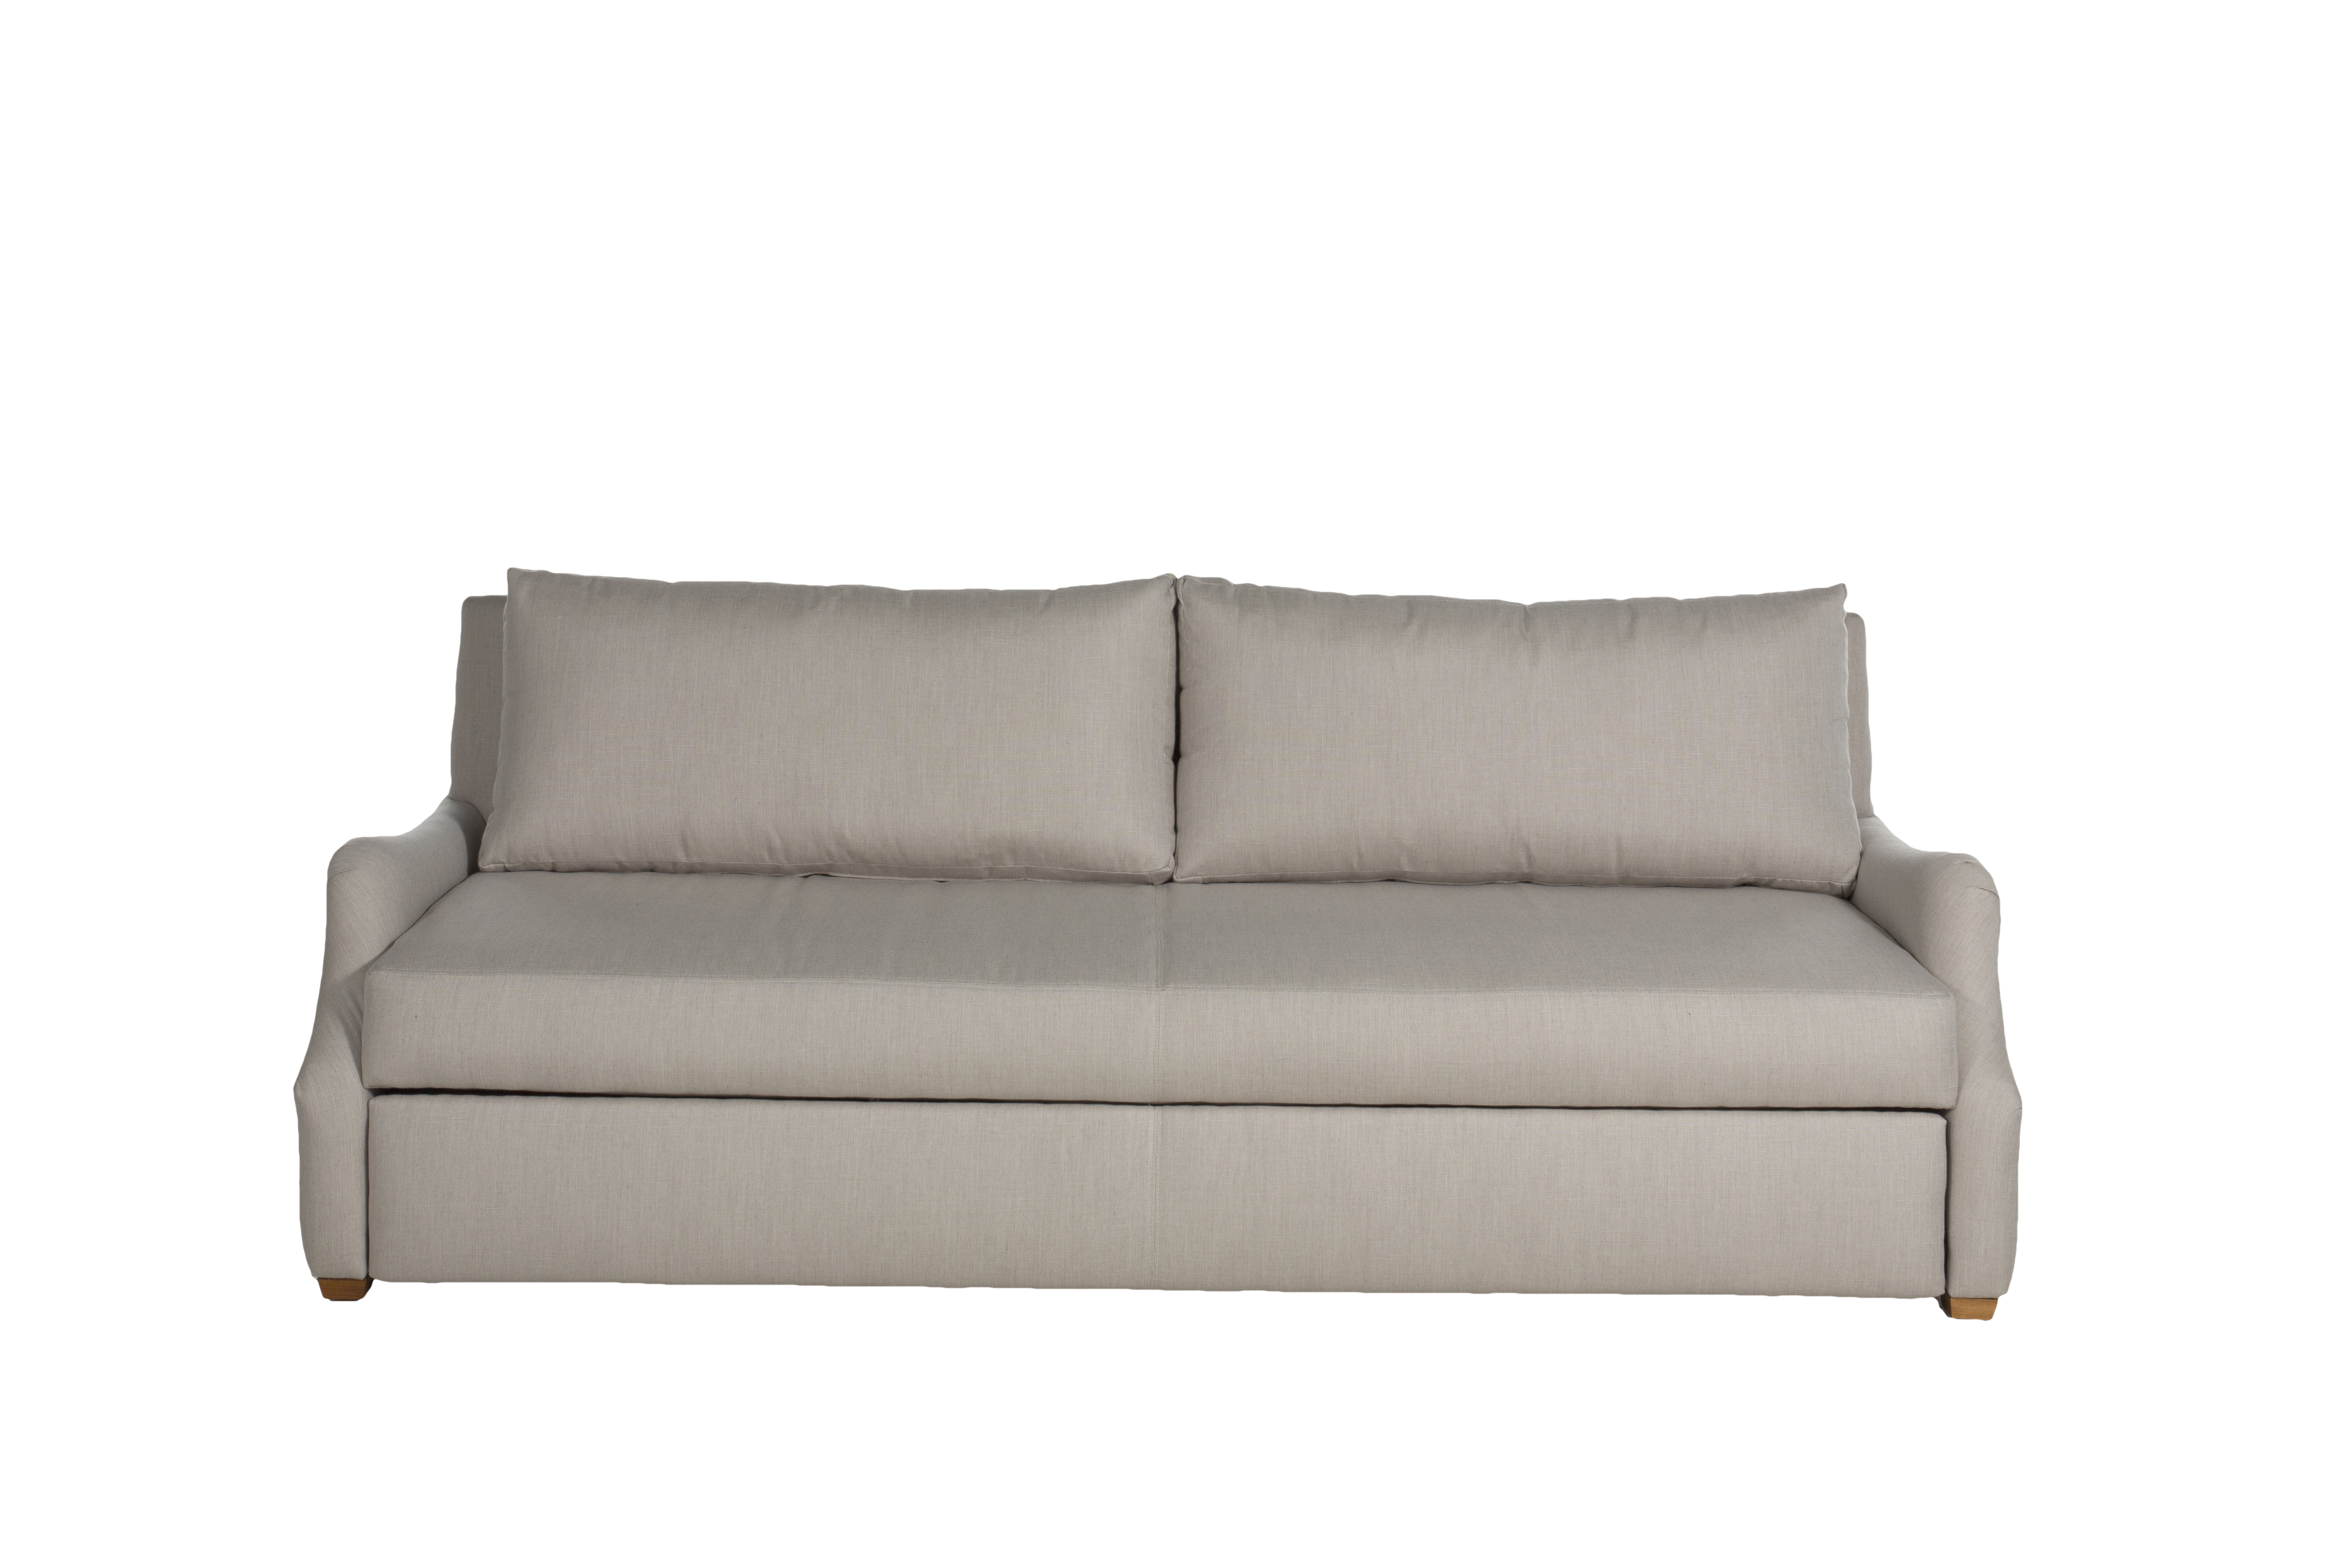 Summer Classics Stafford sleeper sofa